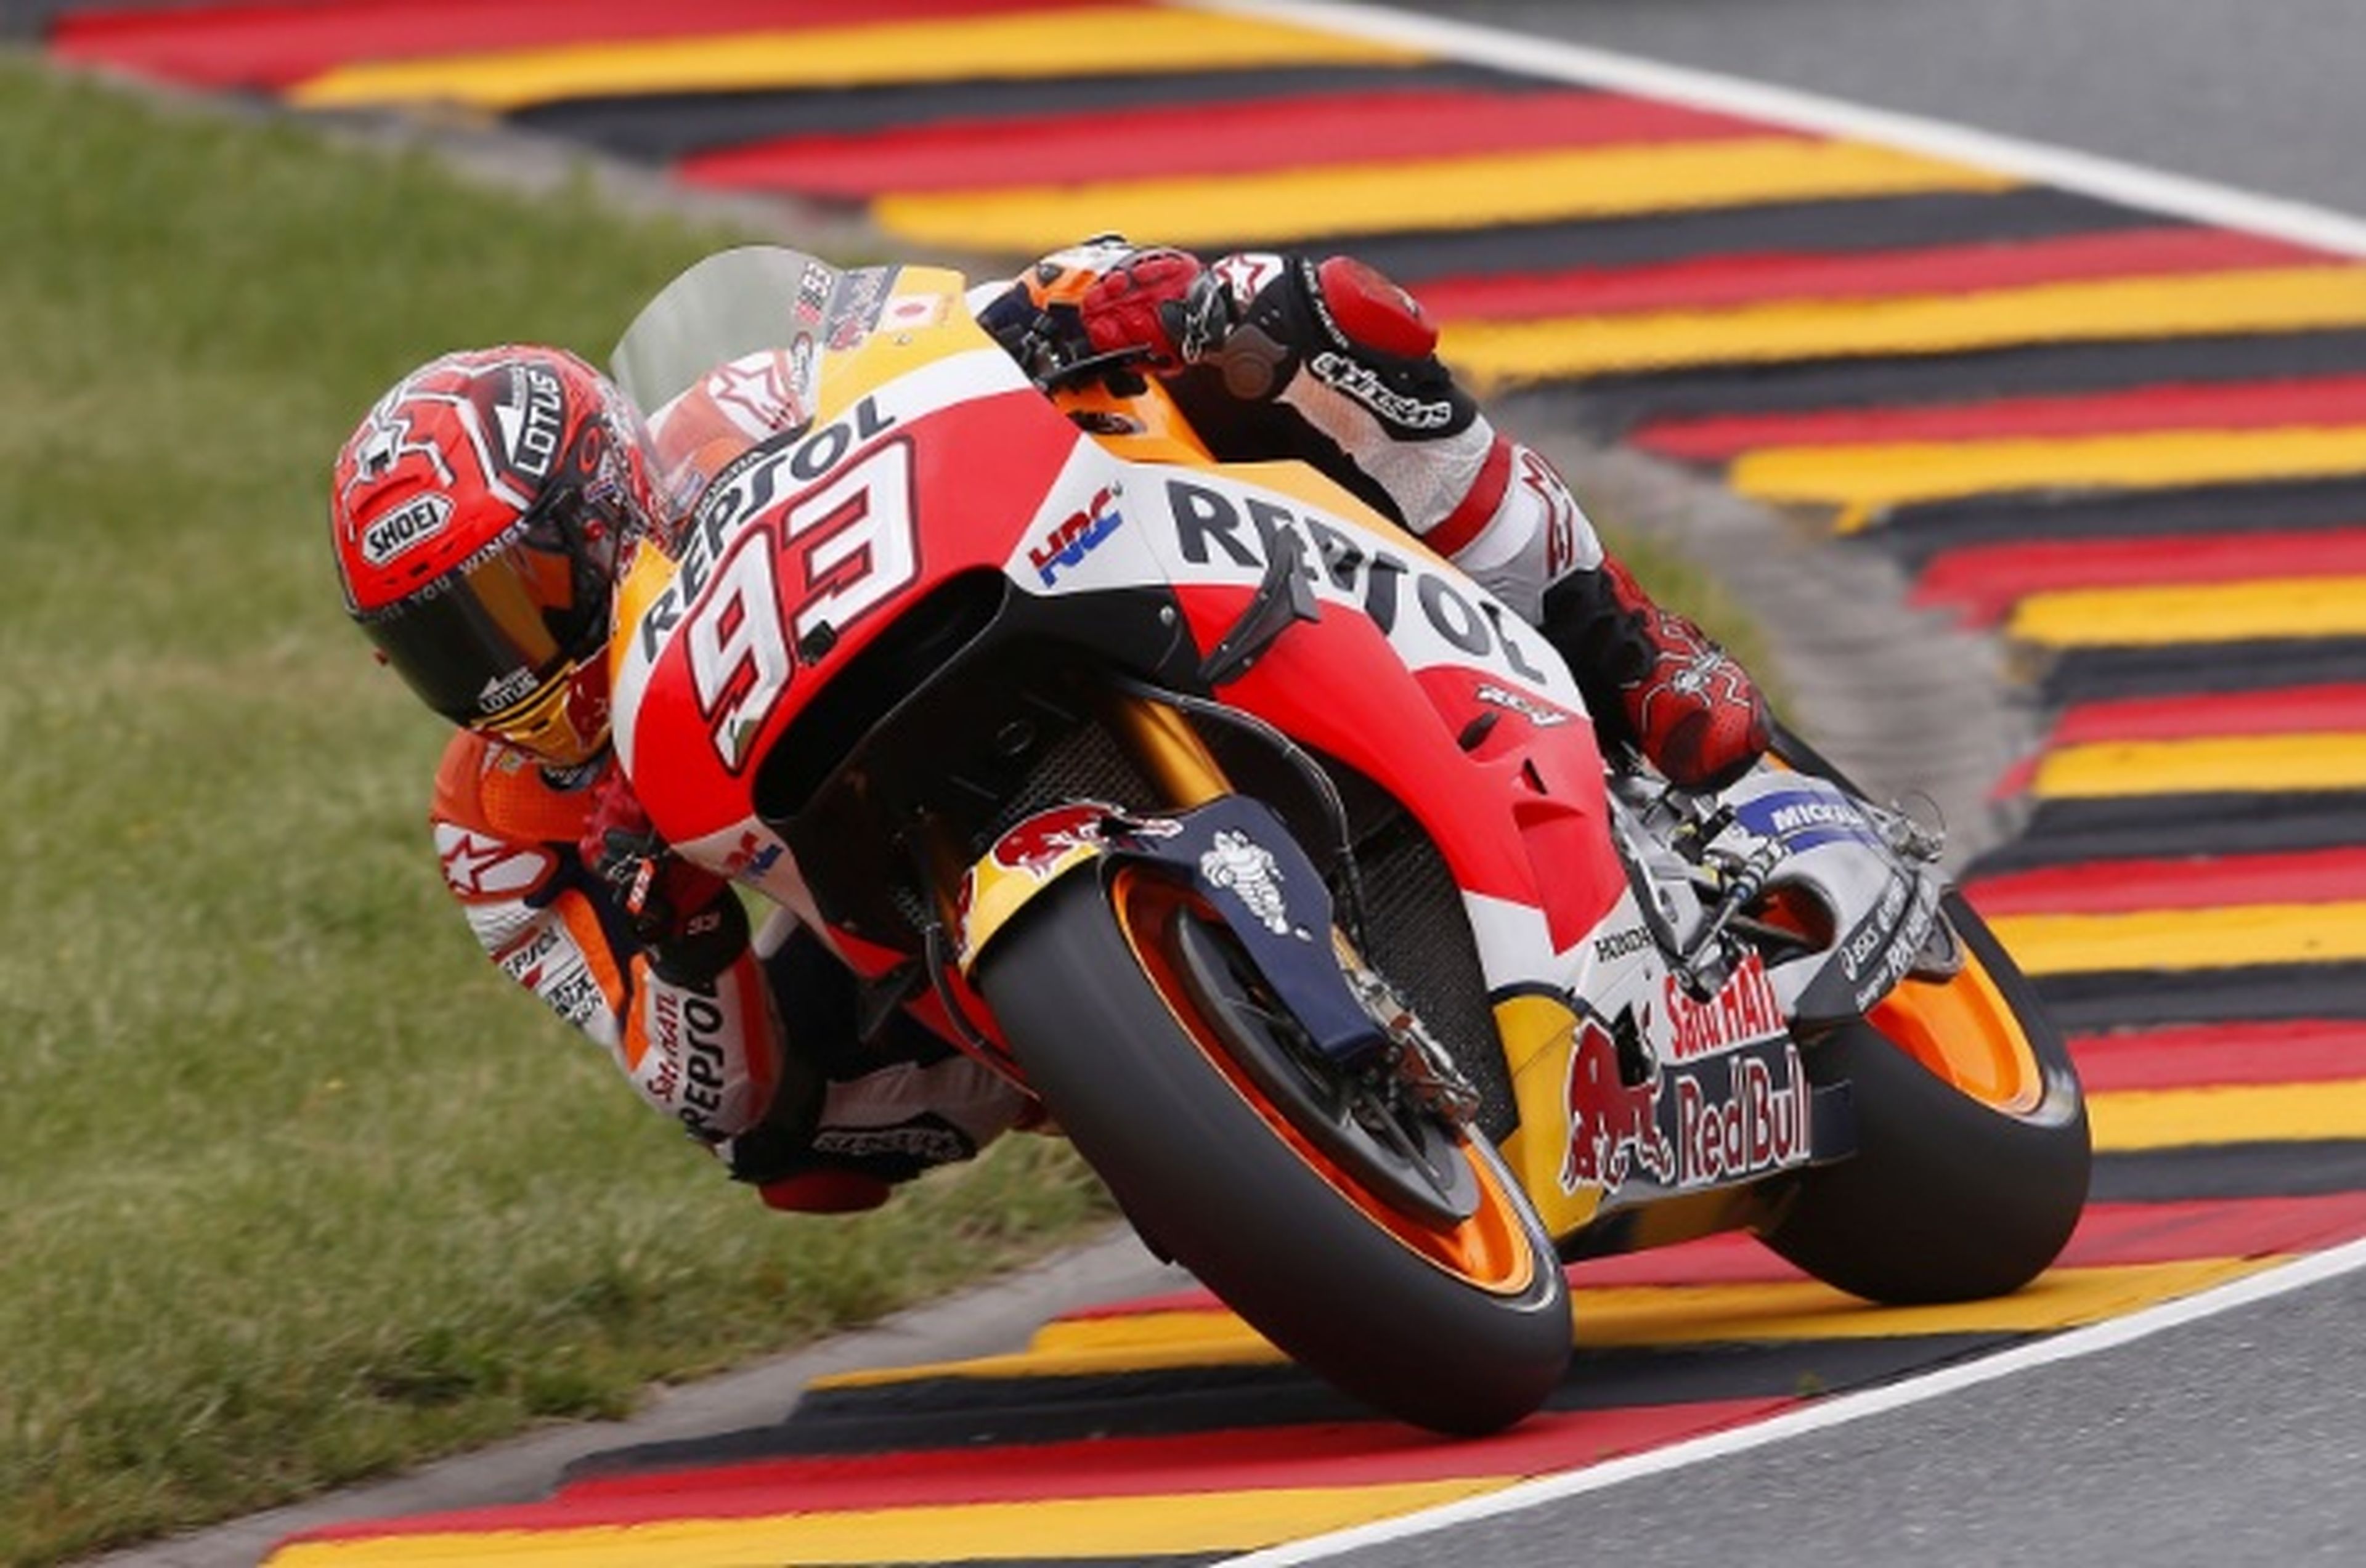 Clasificación MotoGP Sachsenring 2016: Márquez pone orden